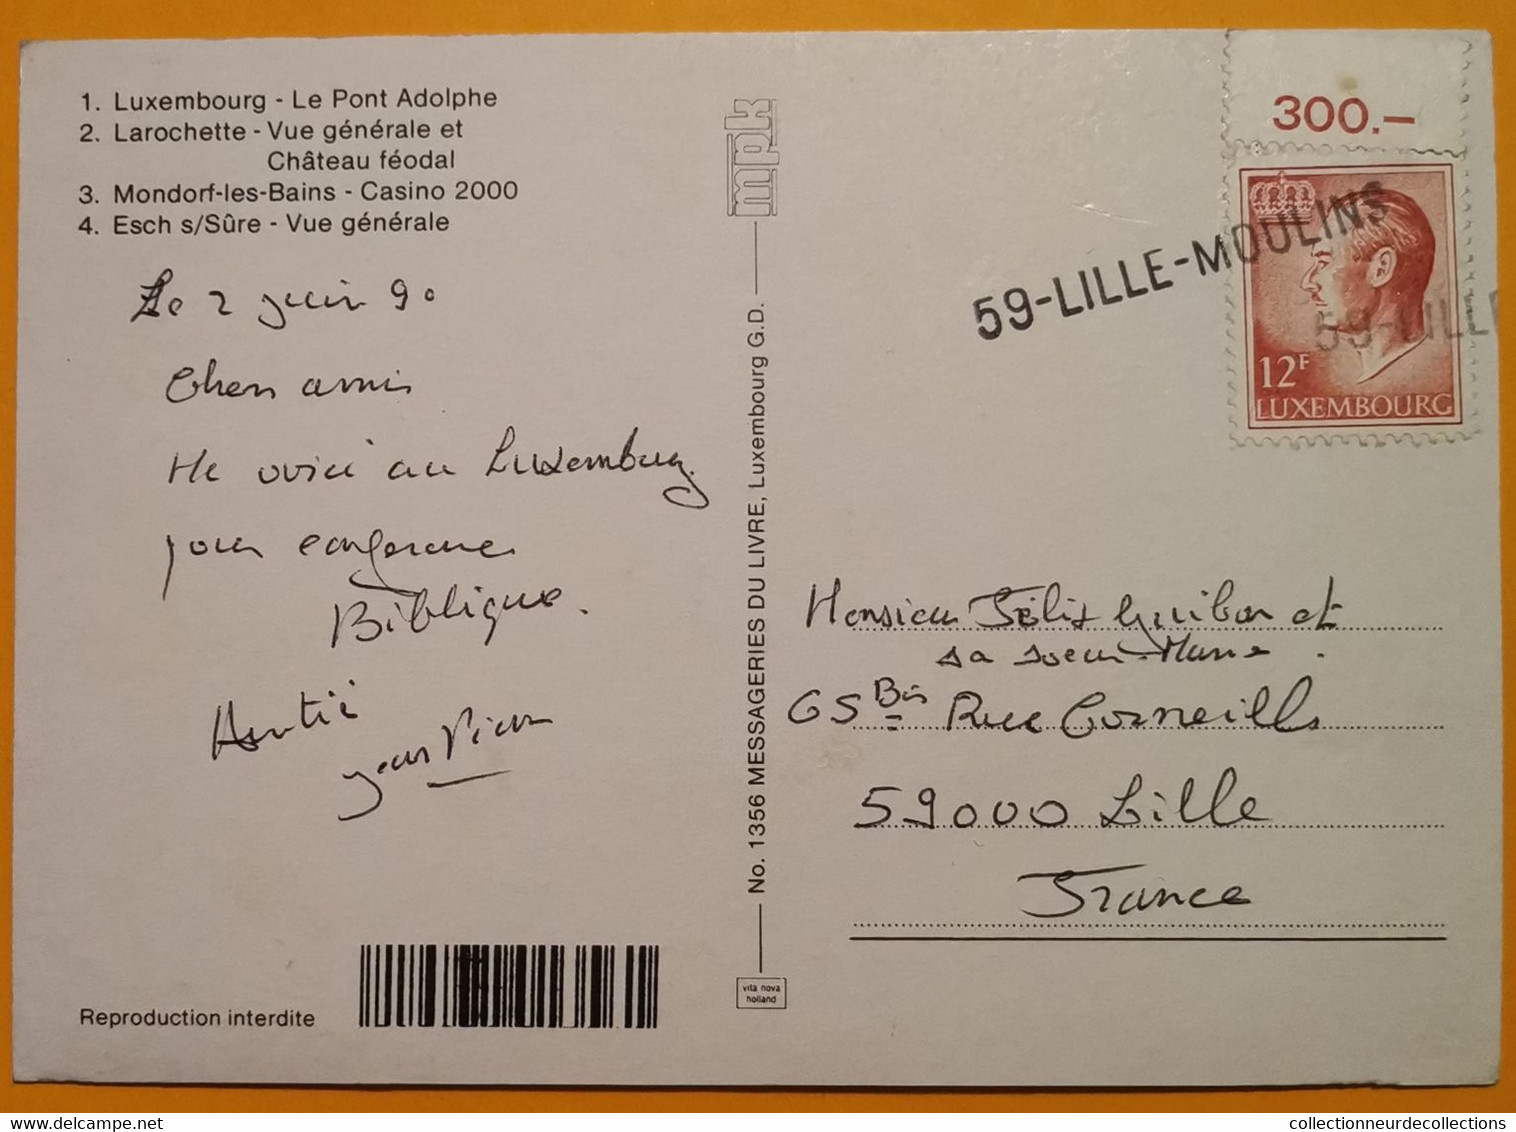 Superbe GRIFFE Linéaire 59-LILLE-MOULINS De 1990 Sur Cpm Luxembourg > France - Cartas & Documentos